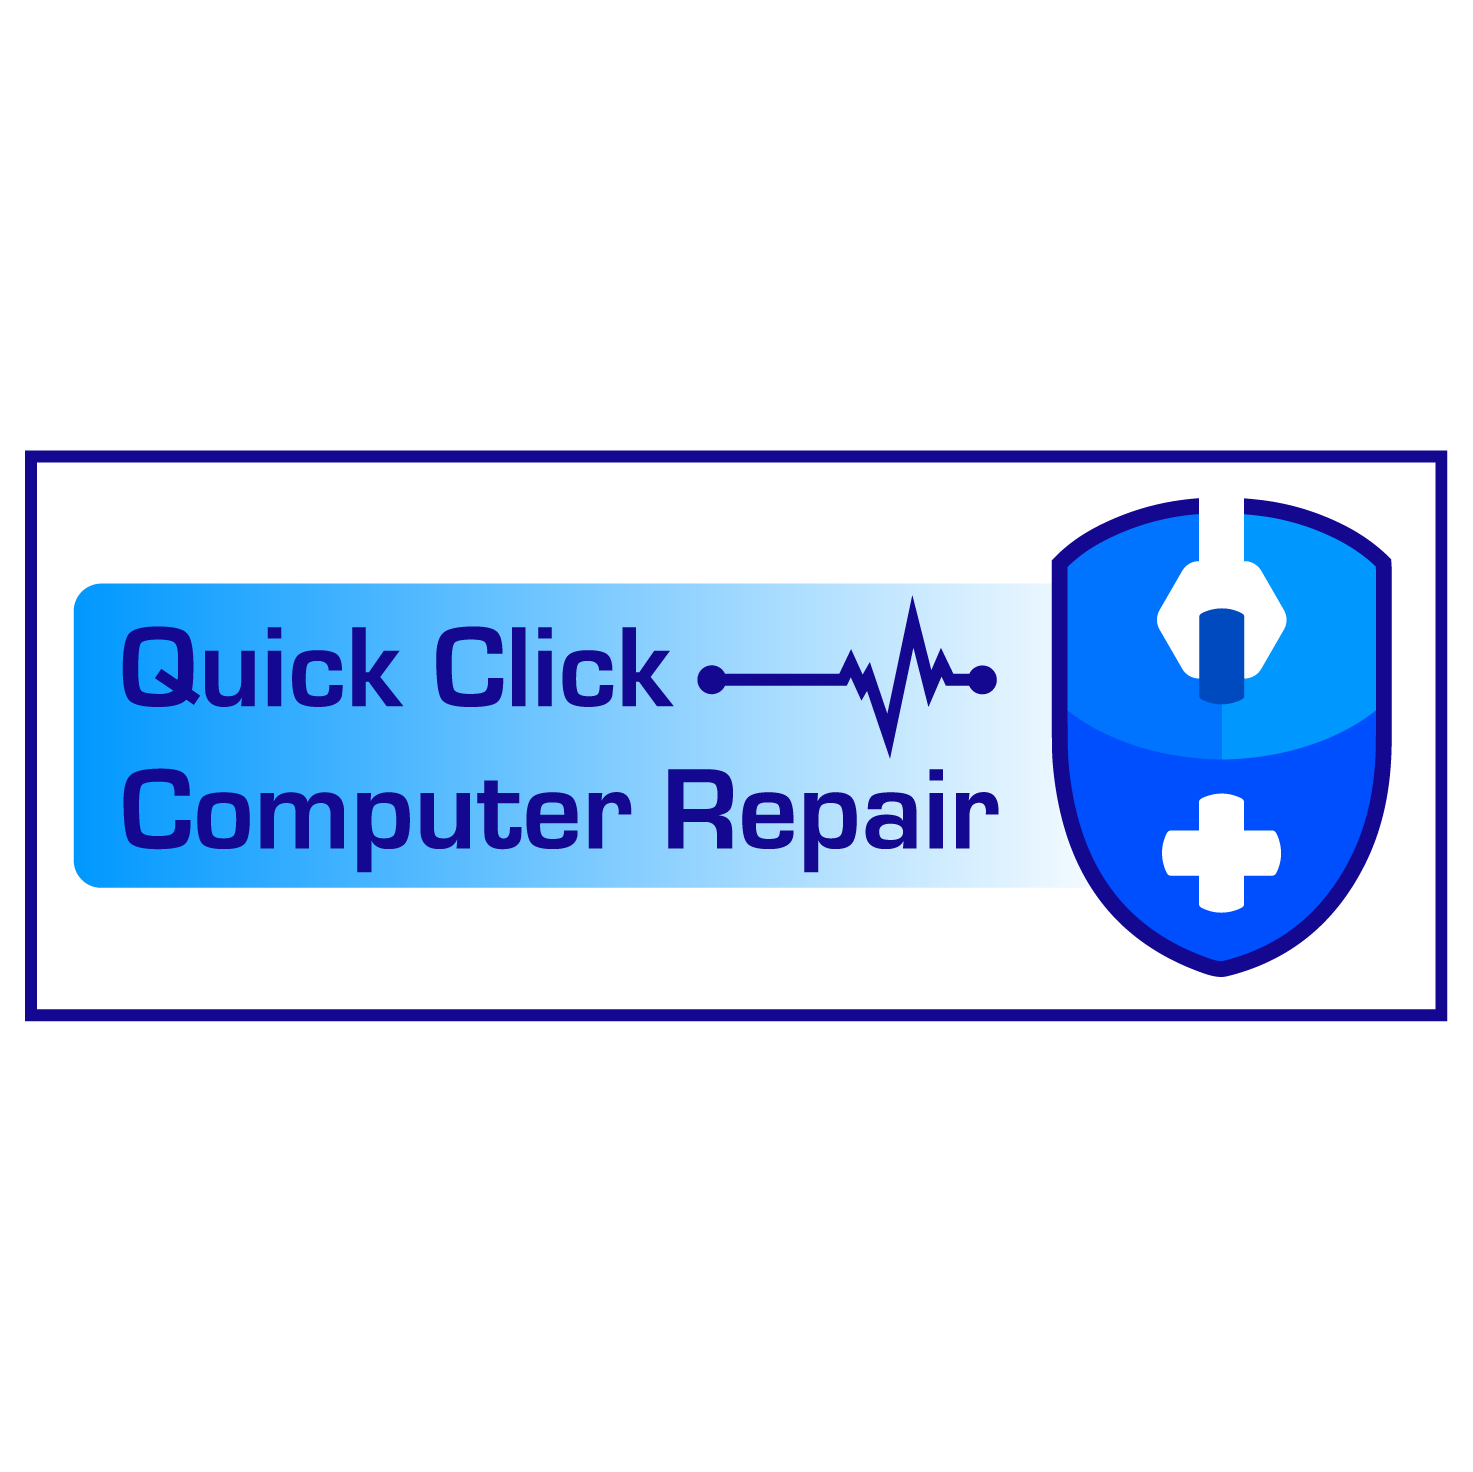 Quick Click Computer Repair